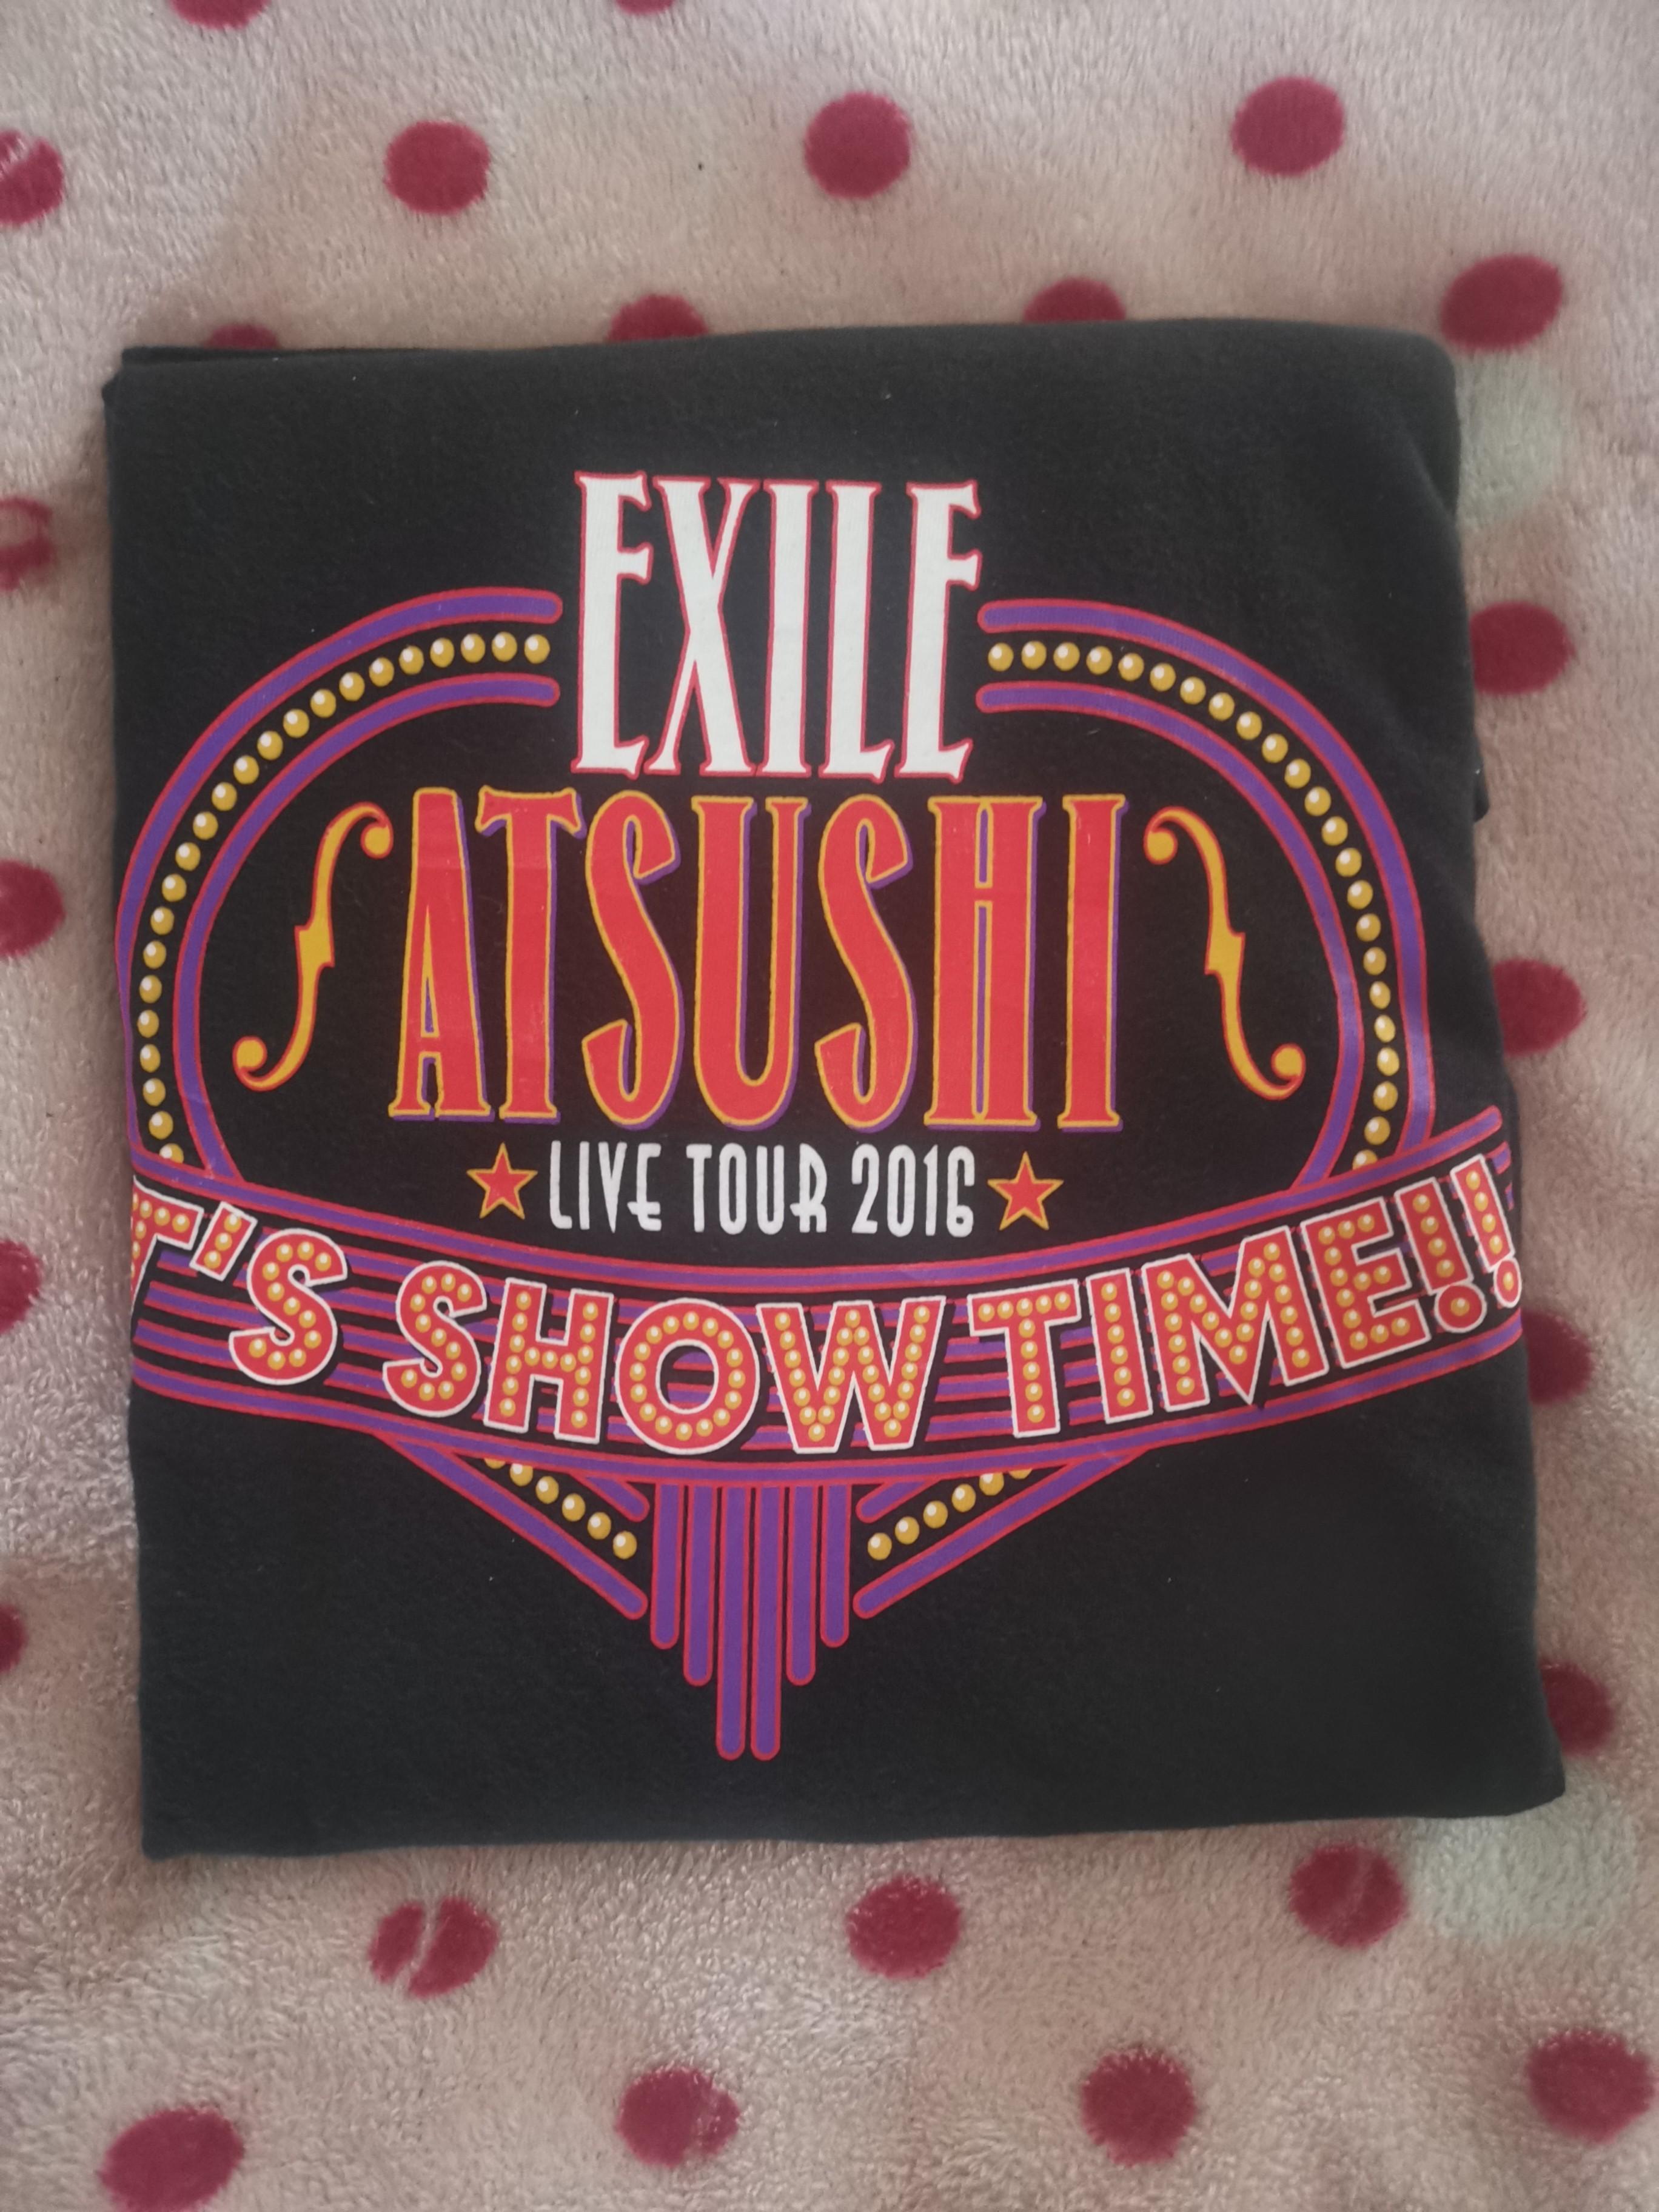 Exile Atsushi 16 Tour Men S Fashion Clothes Tops On Carousell